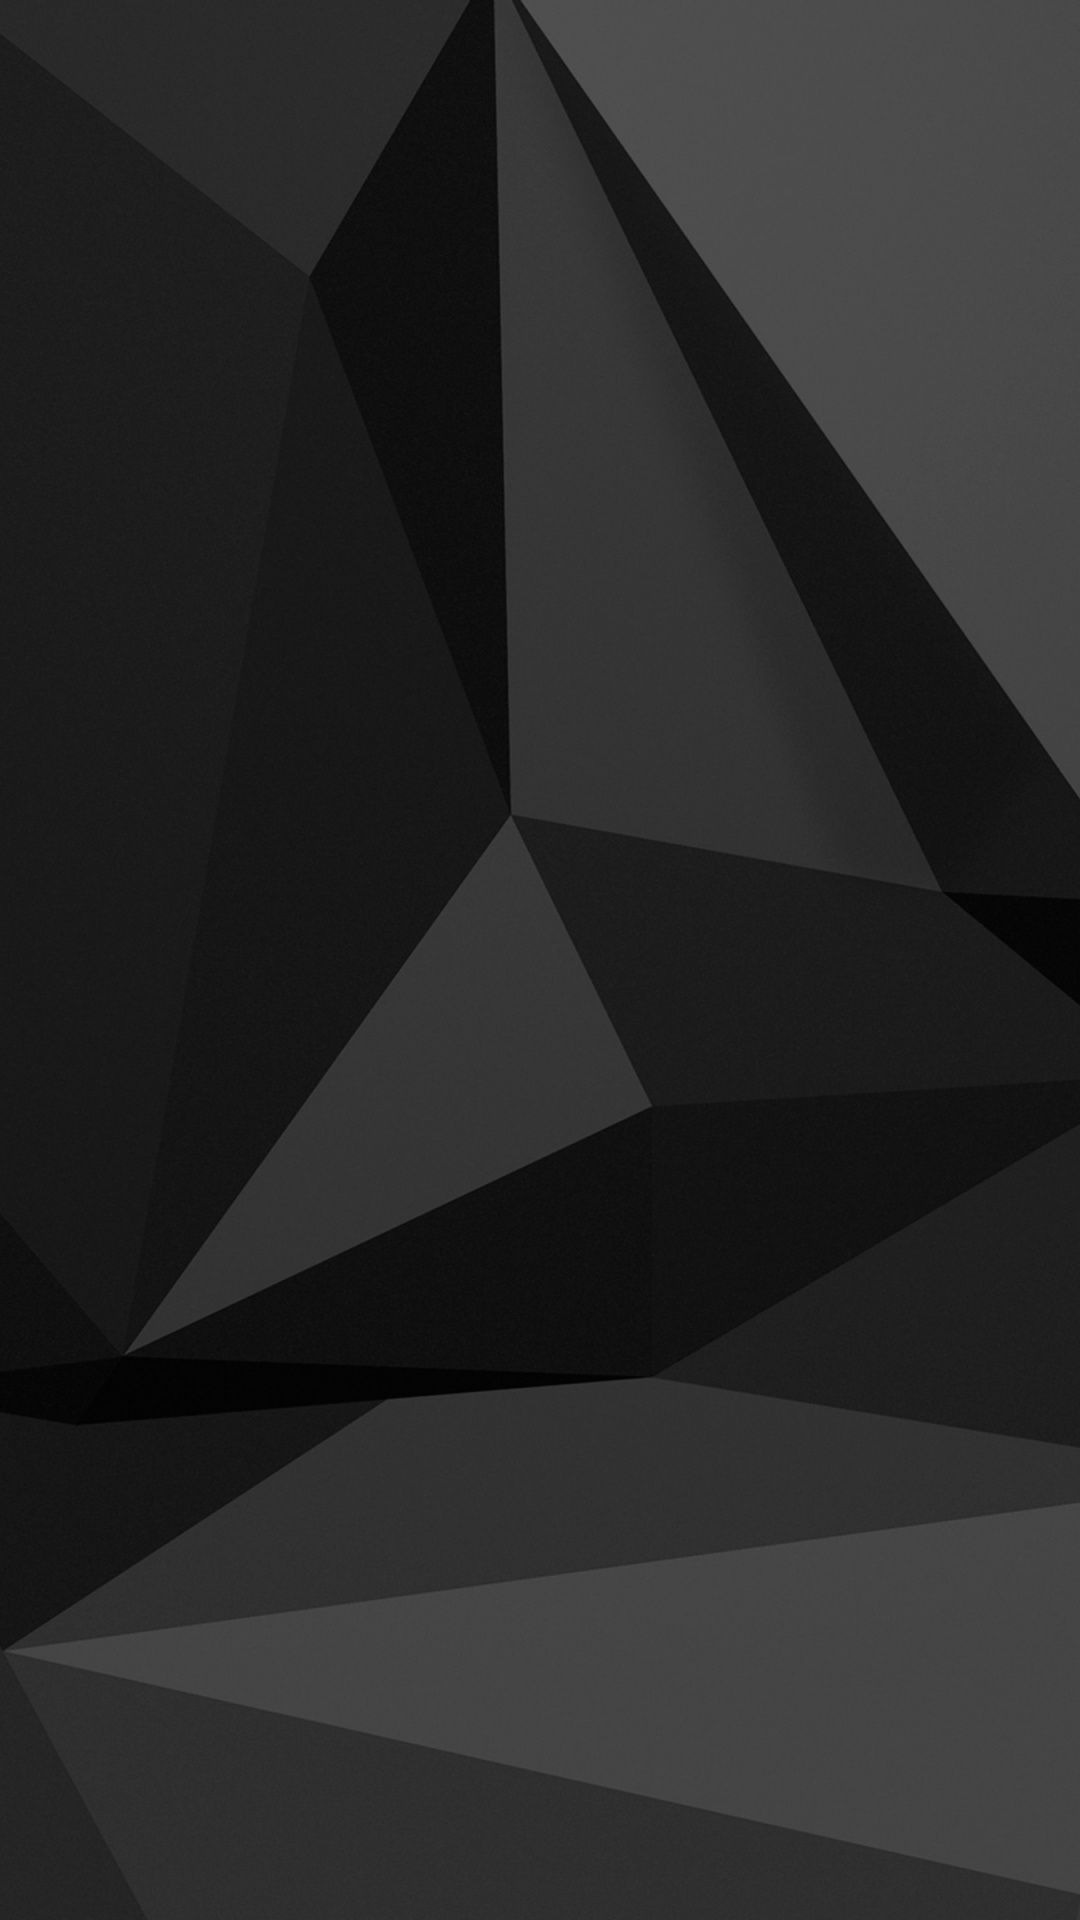 图形处理单元, 黑色的, 3d模拟, 三角形, 对称 壁纸 1080x1920 允许